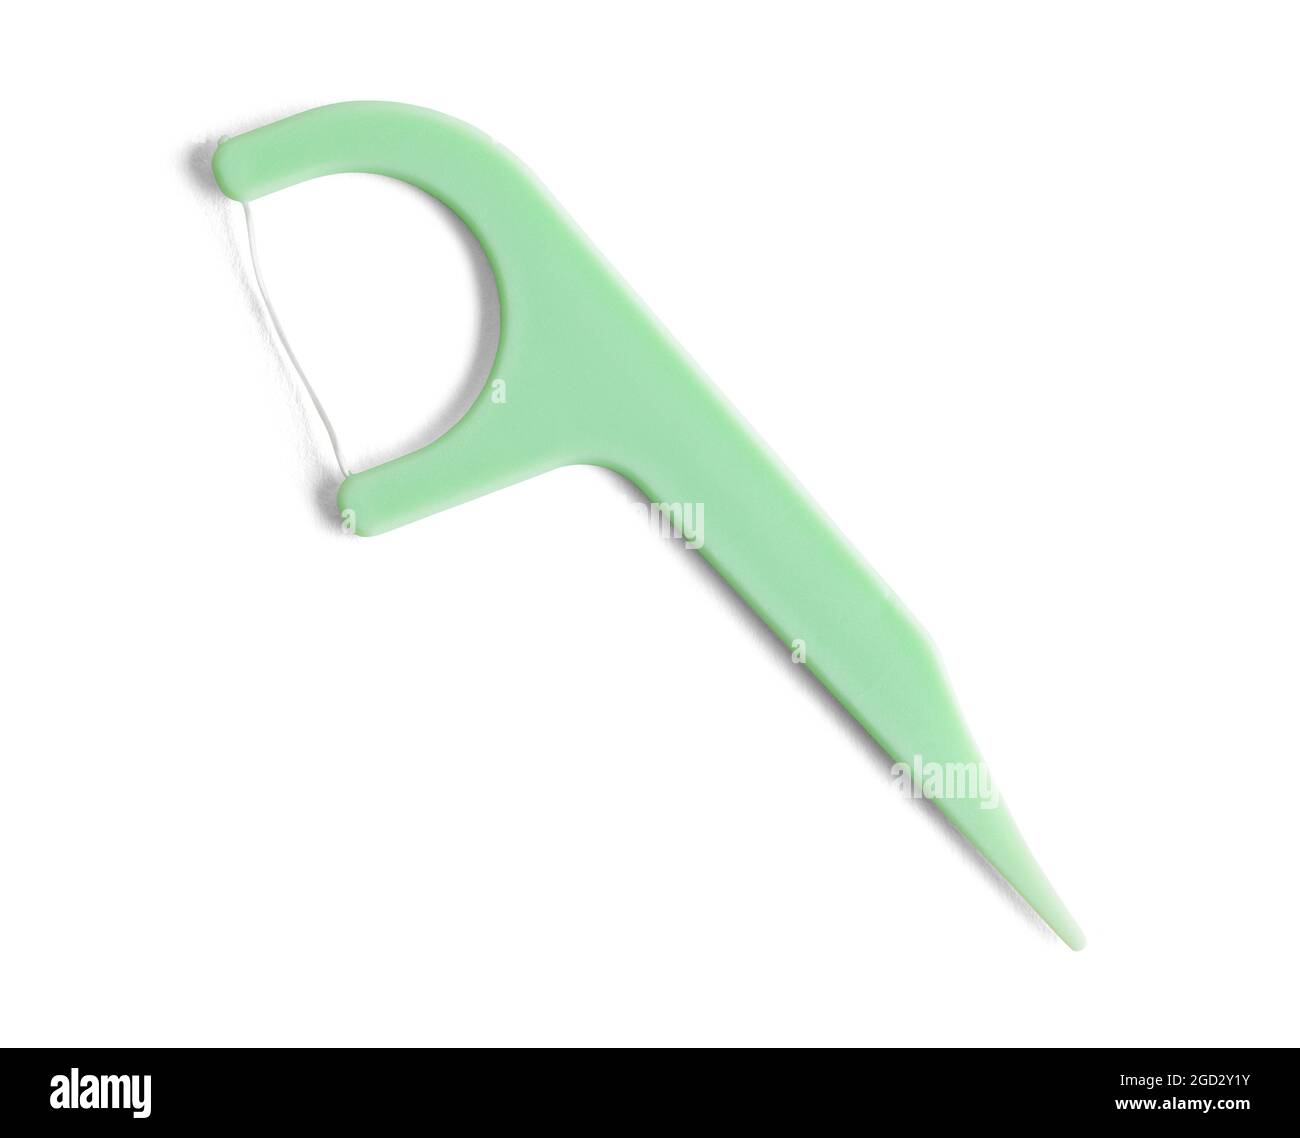 Hilo dental de plástico verde Pick Cut out on White. Foto de stock